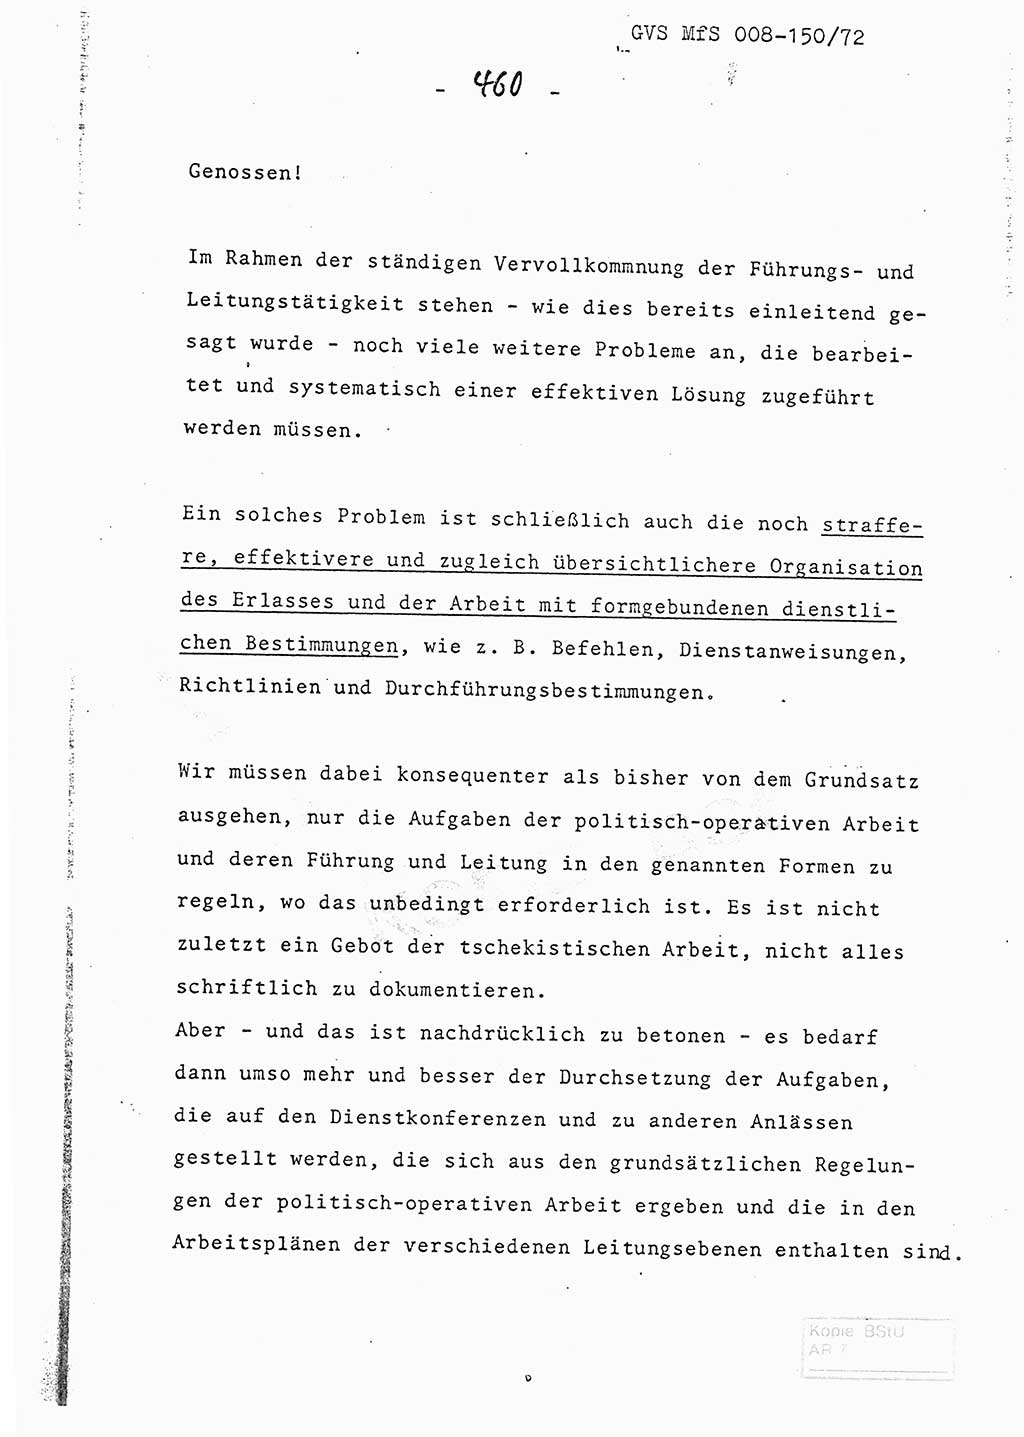 Referat (Entwurf) des Genossen Minister (Generaloberst Erich Mielke) auf der Dienstkonferenz 1972, Ministerium für Staatssicherheit (MfS) [Deutsche Demokratische Republik (DDR)], Der Minister, Geheime Verschlußsache (GVS) 008-150/72, Berlin 25.2.1972, Seite 460 (Ref. Entw. DK MfS DDR Min. GVS 008-150/72 1972, S. 460)